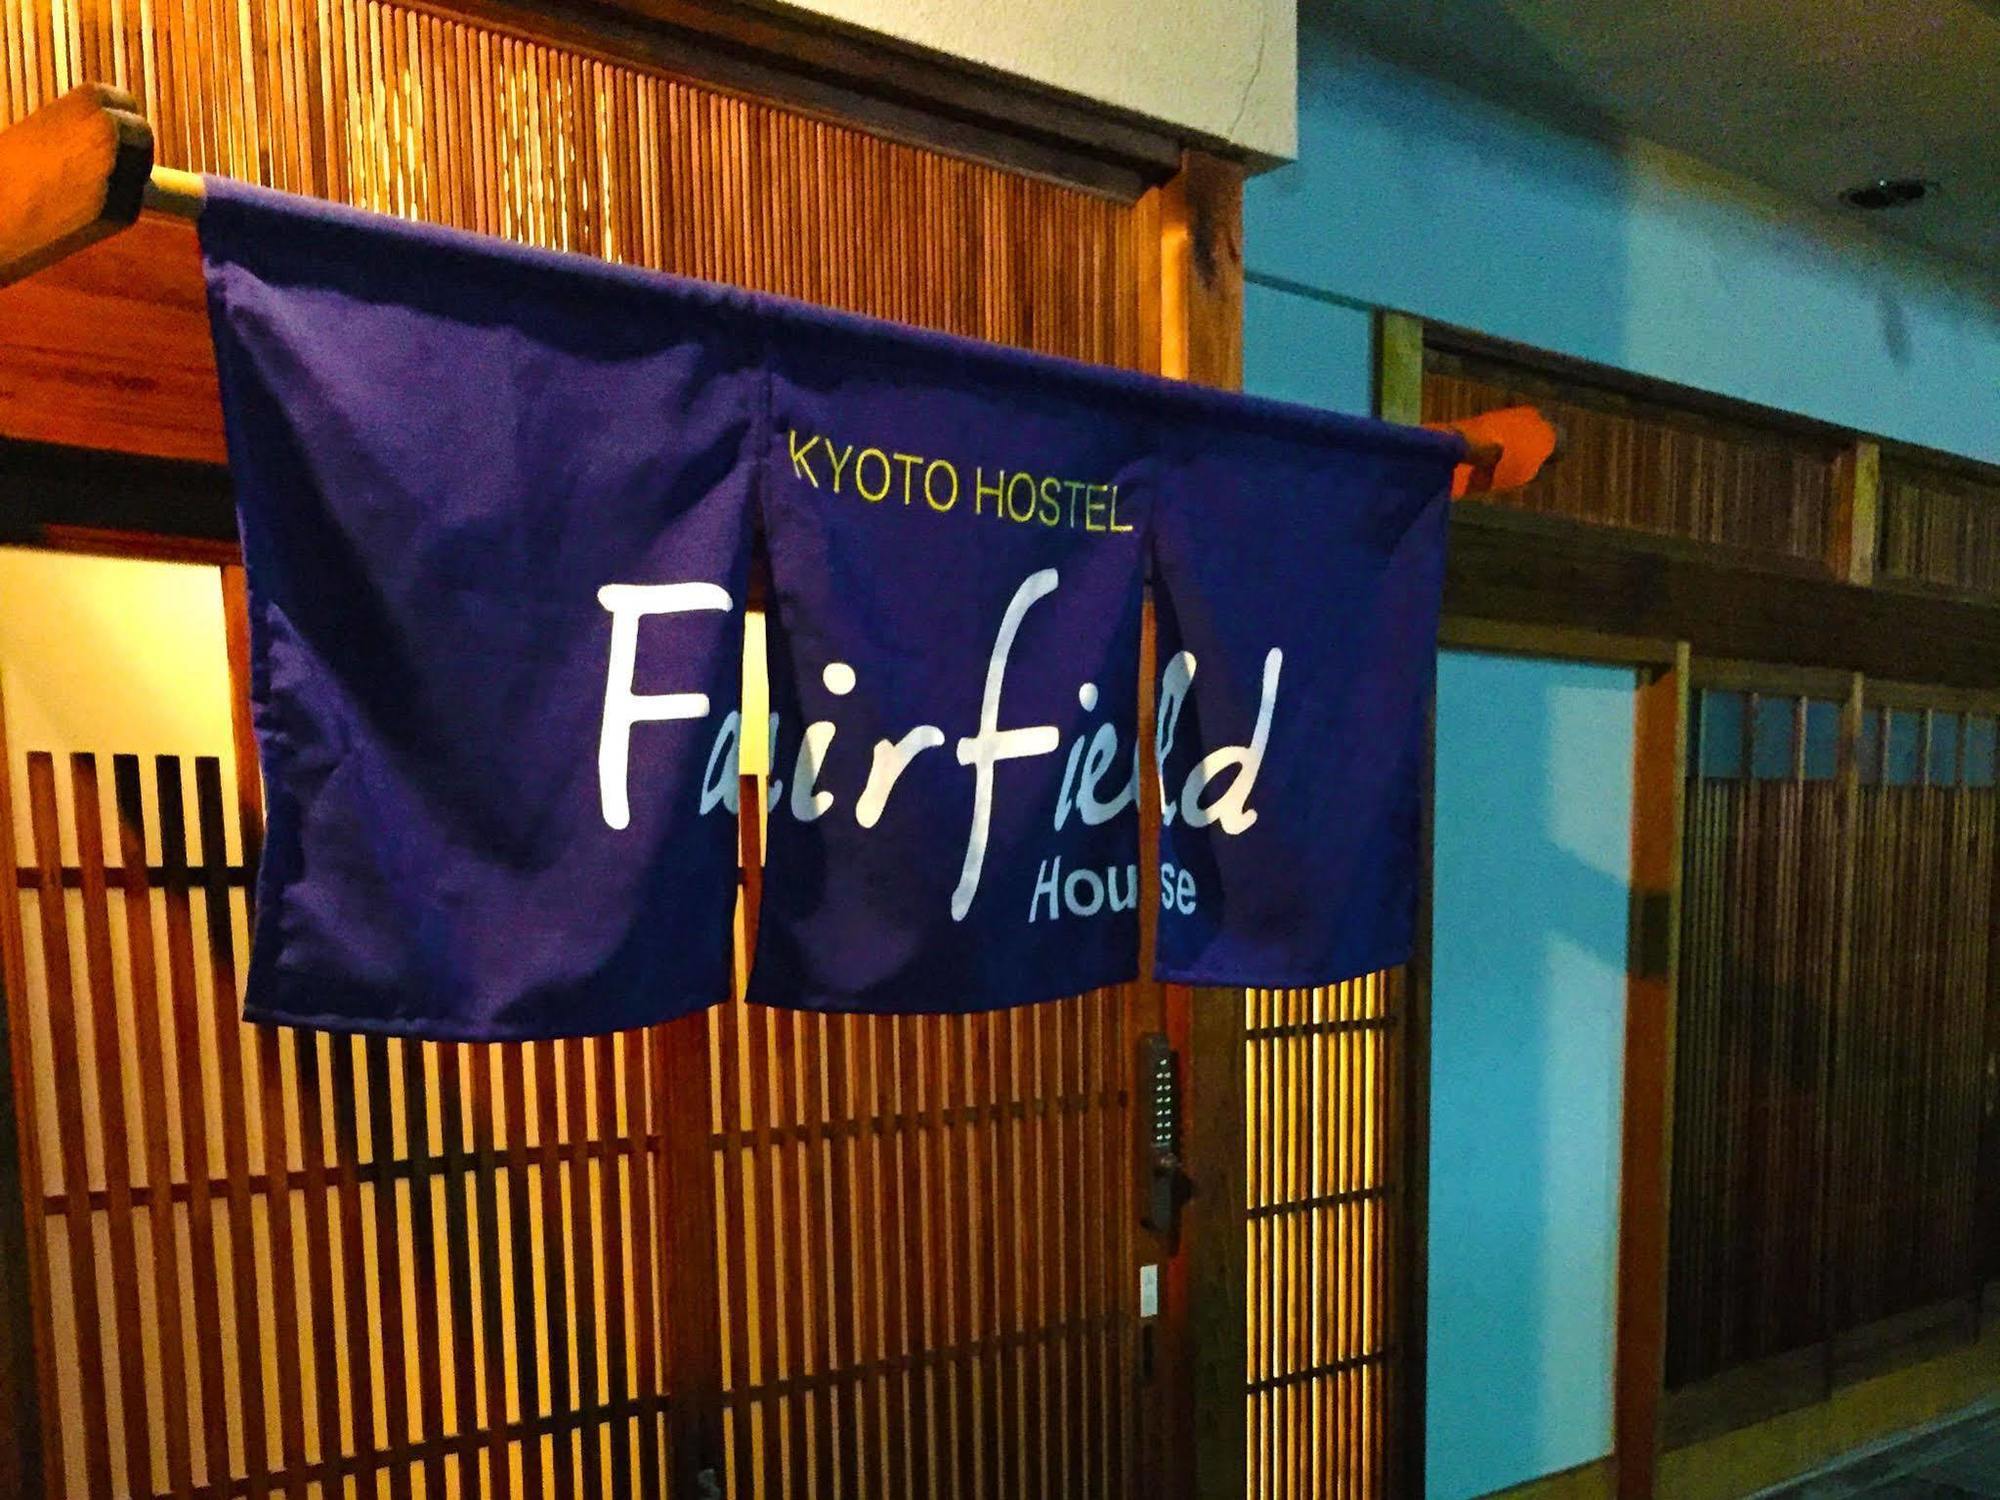 Fairfield House Ostello Kyōto Esterno foto